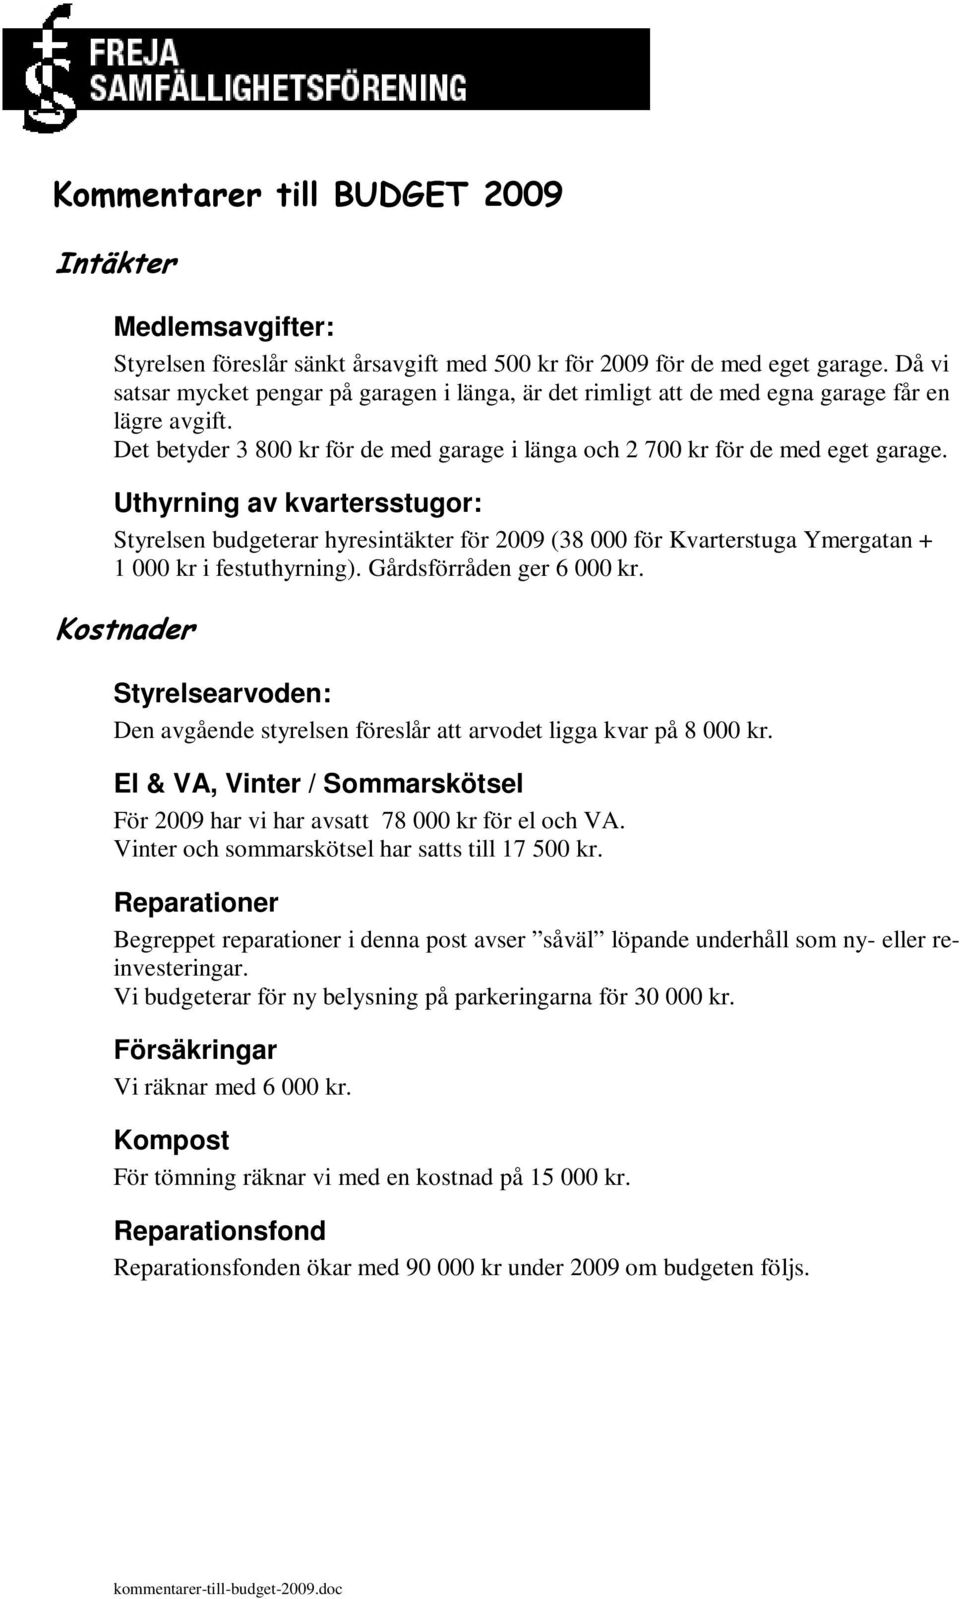 Uthyrning av kvartersstugor: Styrelsen budgeterar hyresintäkter för 2009 (38 000 för Kvarterstuga Ymergatan + 1 000 kr i festuthyrning). Gårdsförråden ger 6 000 kr.